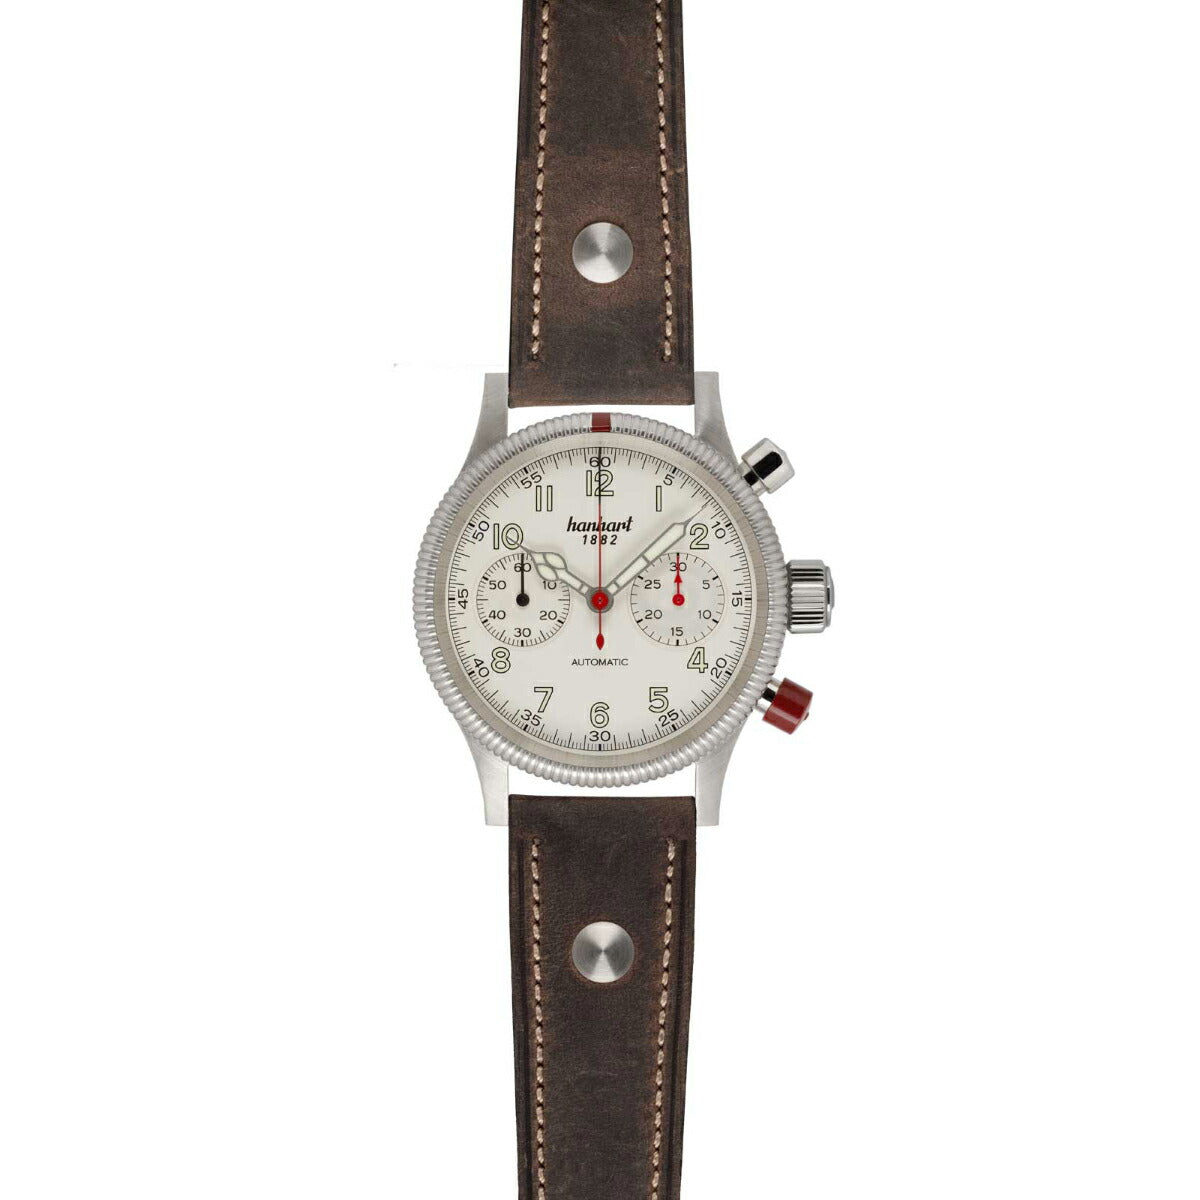 ハンハルト hanhart 腕時計 メンズ パイオニア マークツー ホワイト PIONEER Mk II White 自動巻き 1H716.200-0010